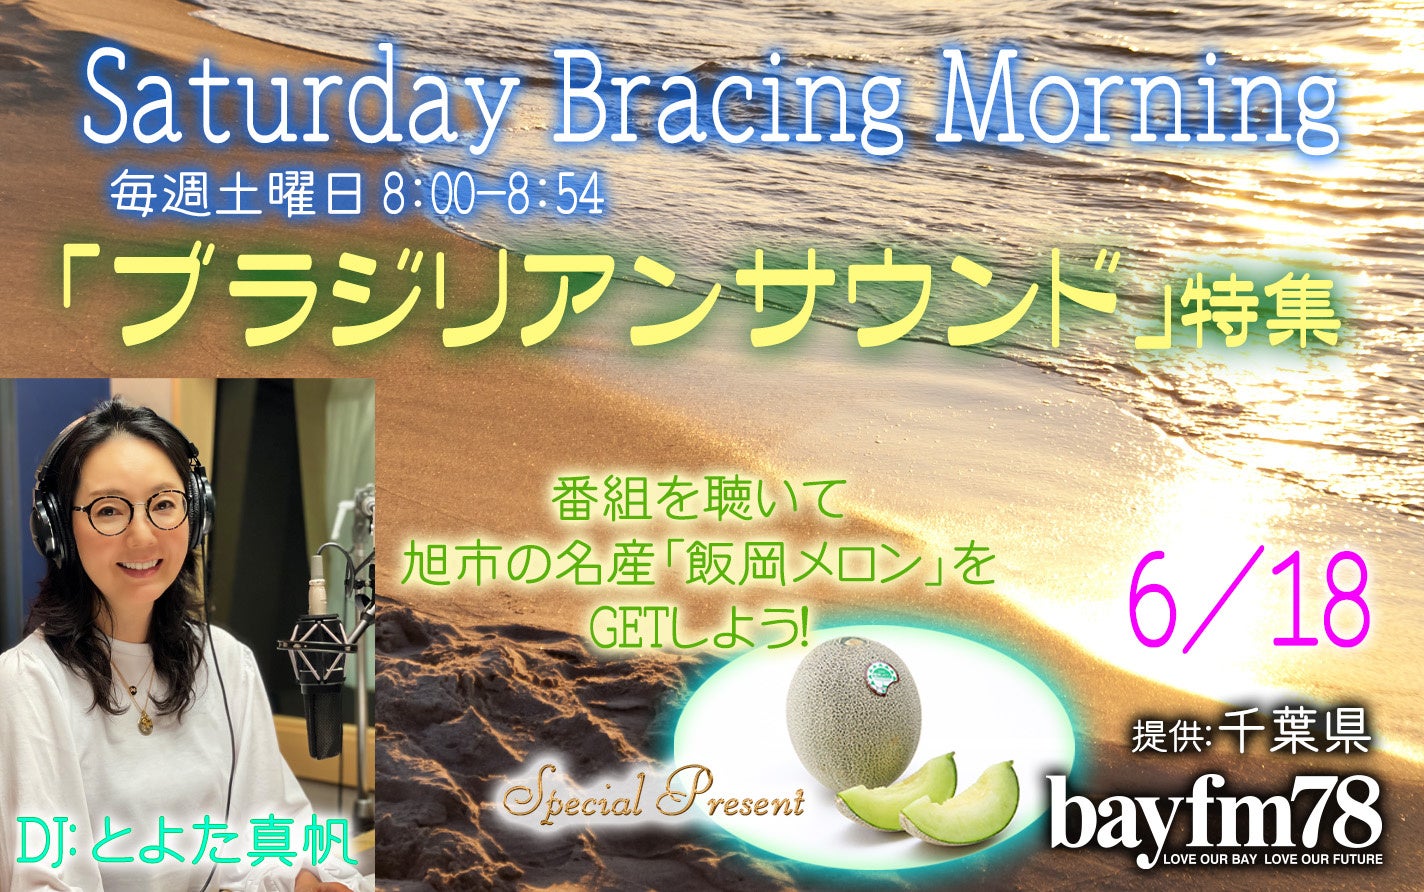 レイニーシーズンに心地いいブラジリアンサウンド特集!飯岡メロンのプレゼントも!／6月18日(土)『SATURDAY BRACING MORNING』のサブ画像1